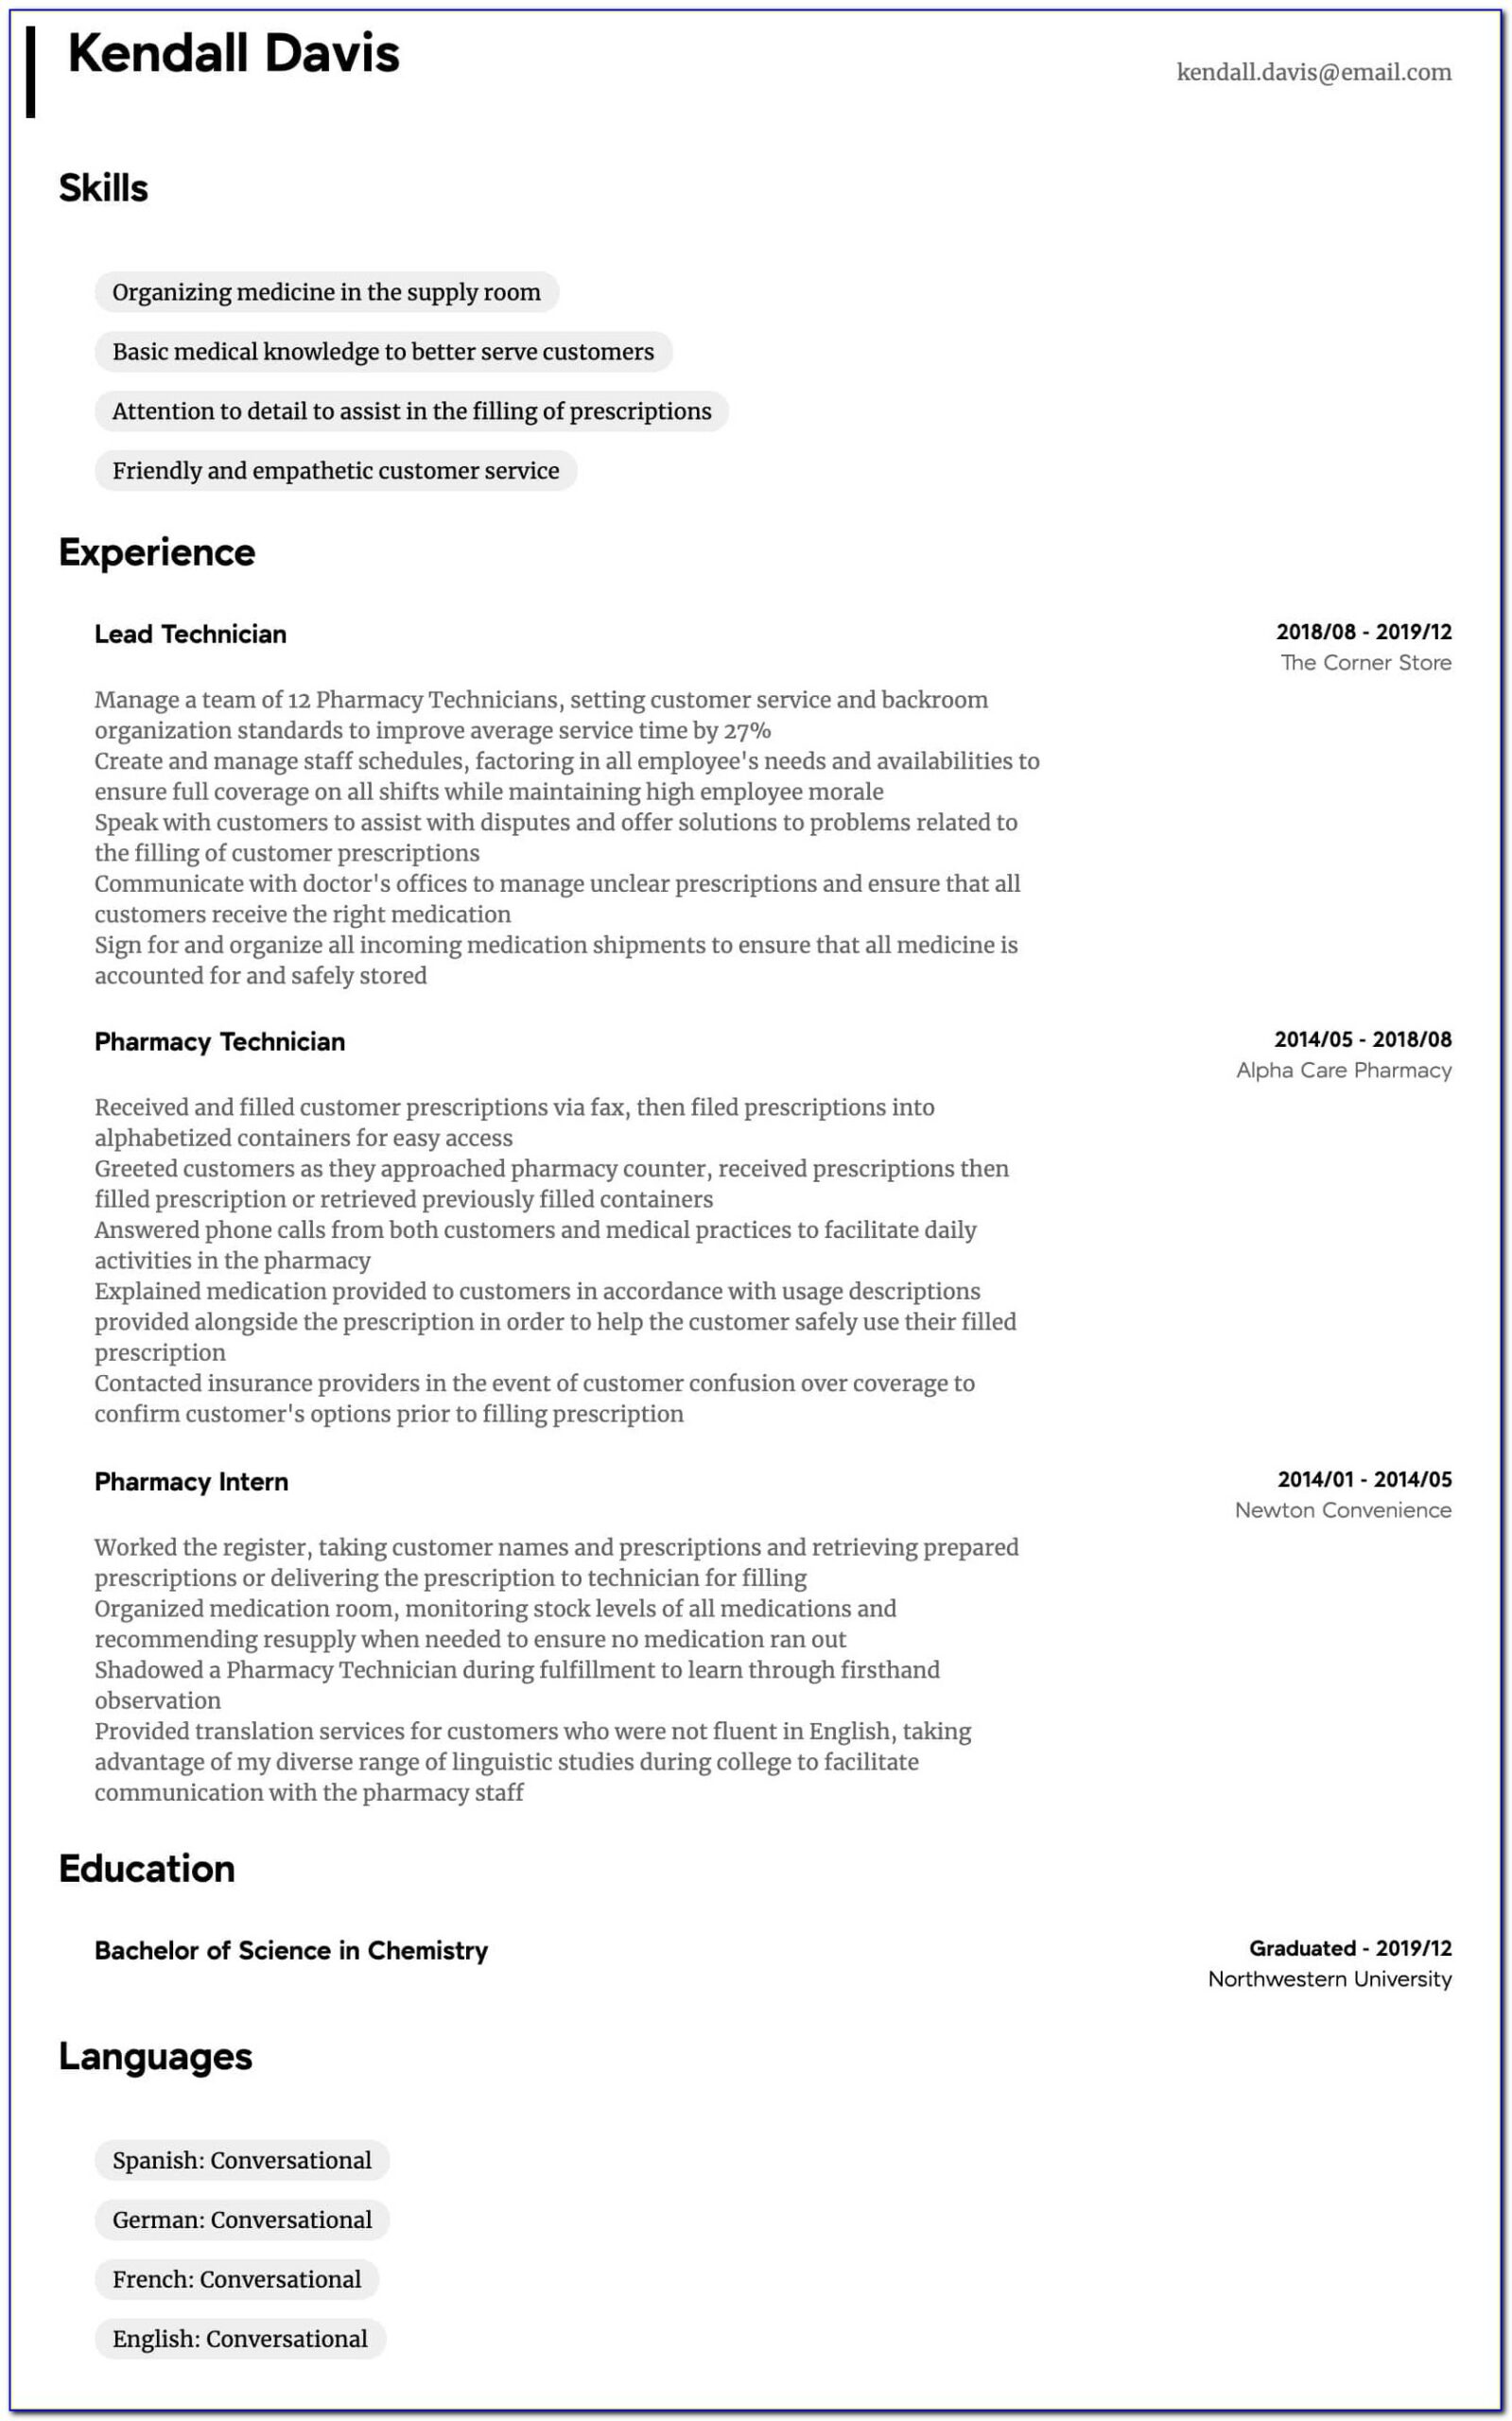 Resume For Pharmacy Technician In Hospital